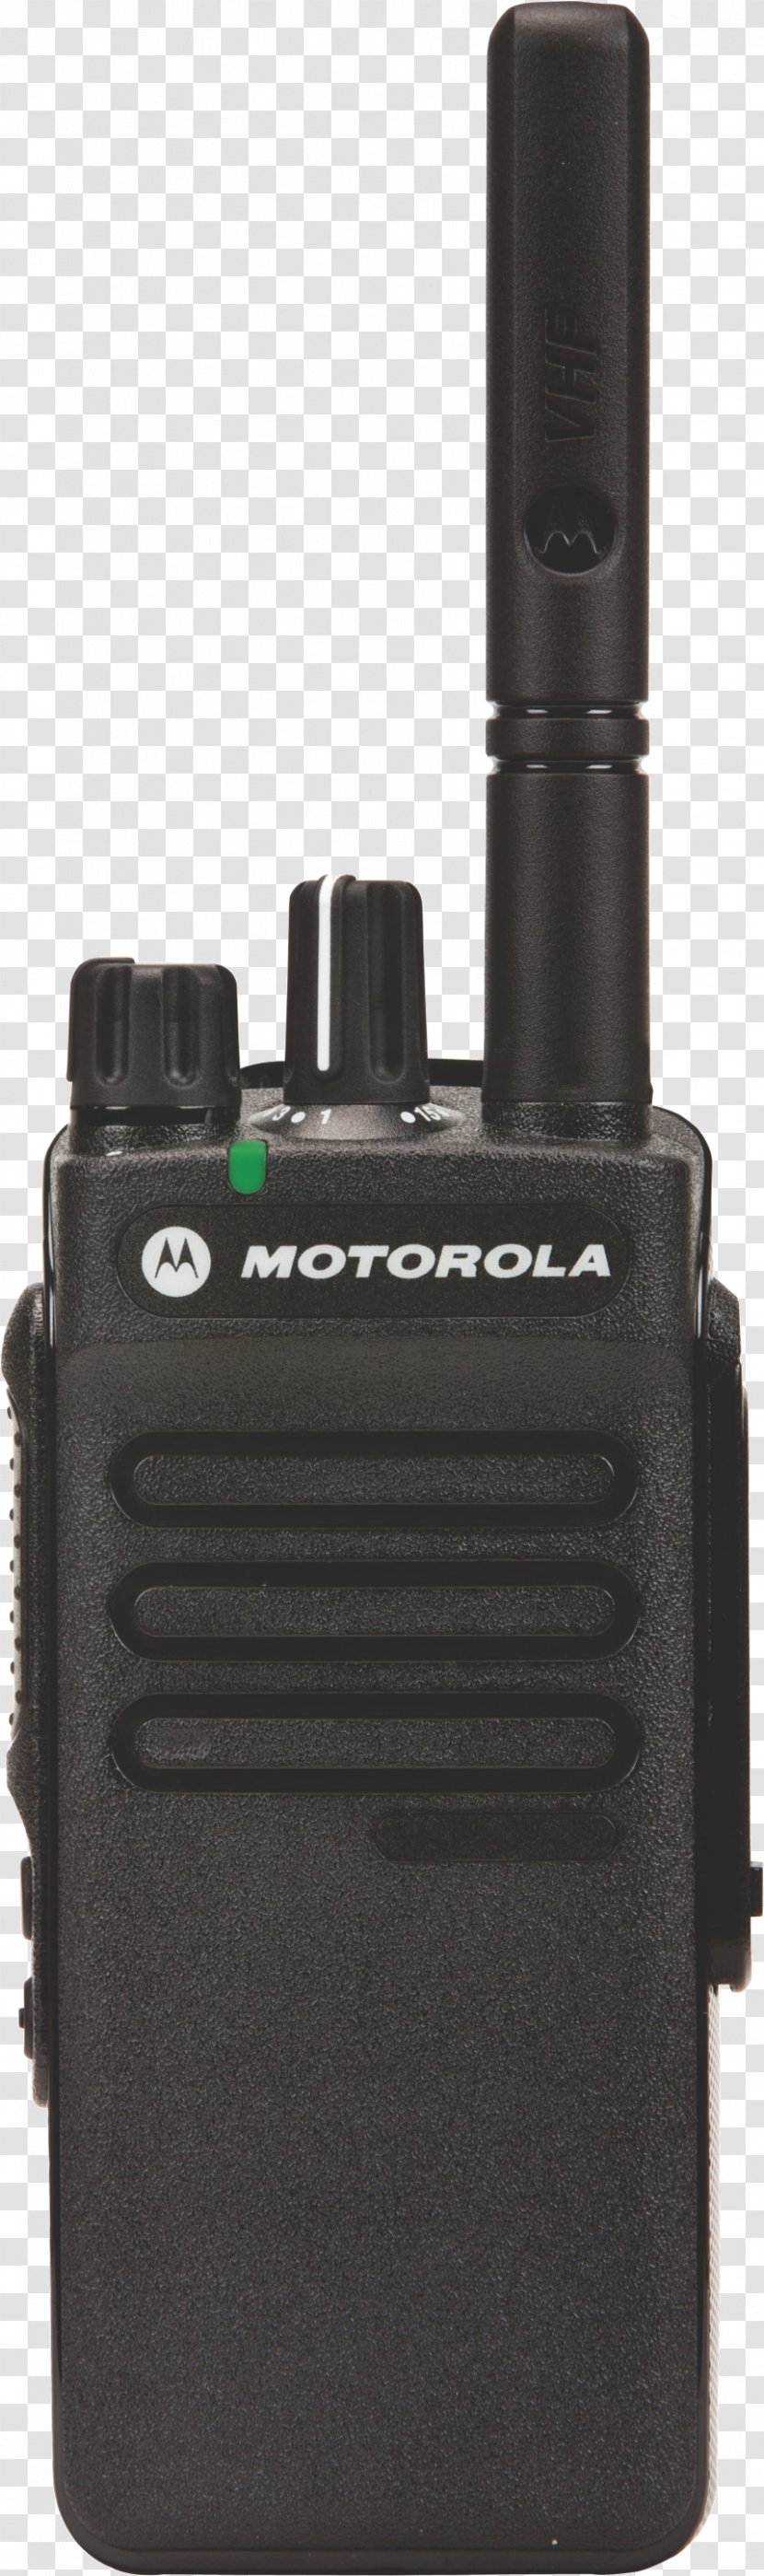 Handheld Two-Way Radios MOTOTRBO Digital Mobile Radio Motorola XT460 Hardware/Electronic Transparent PNG